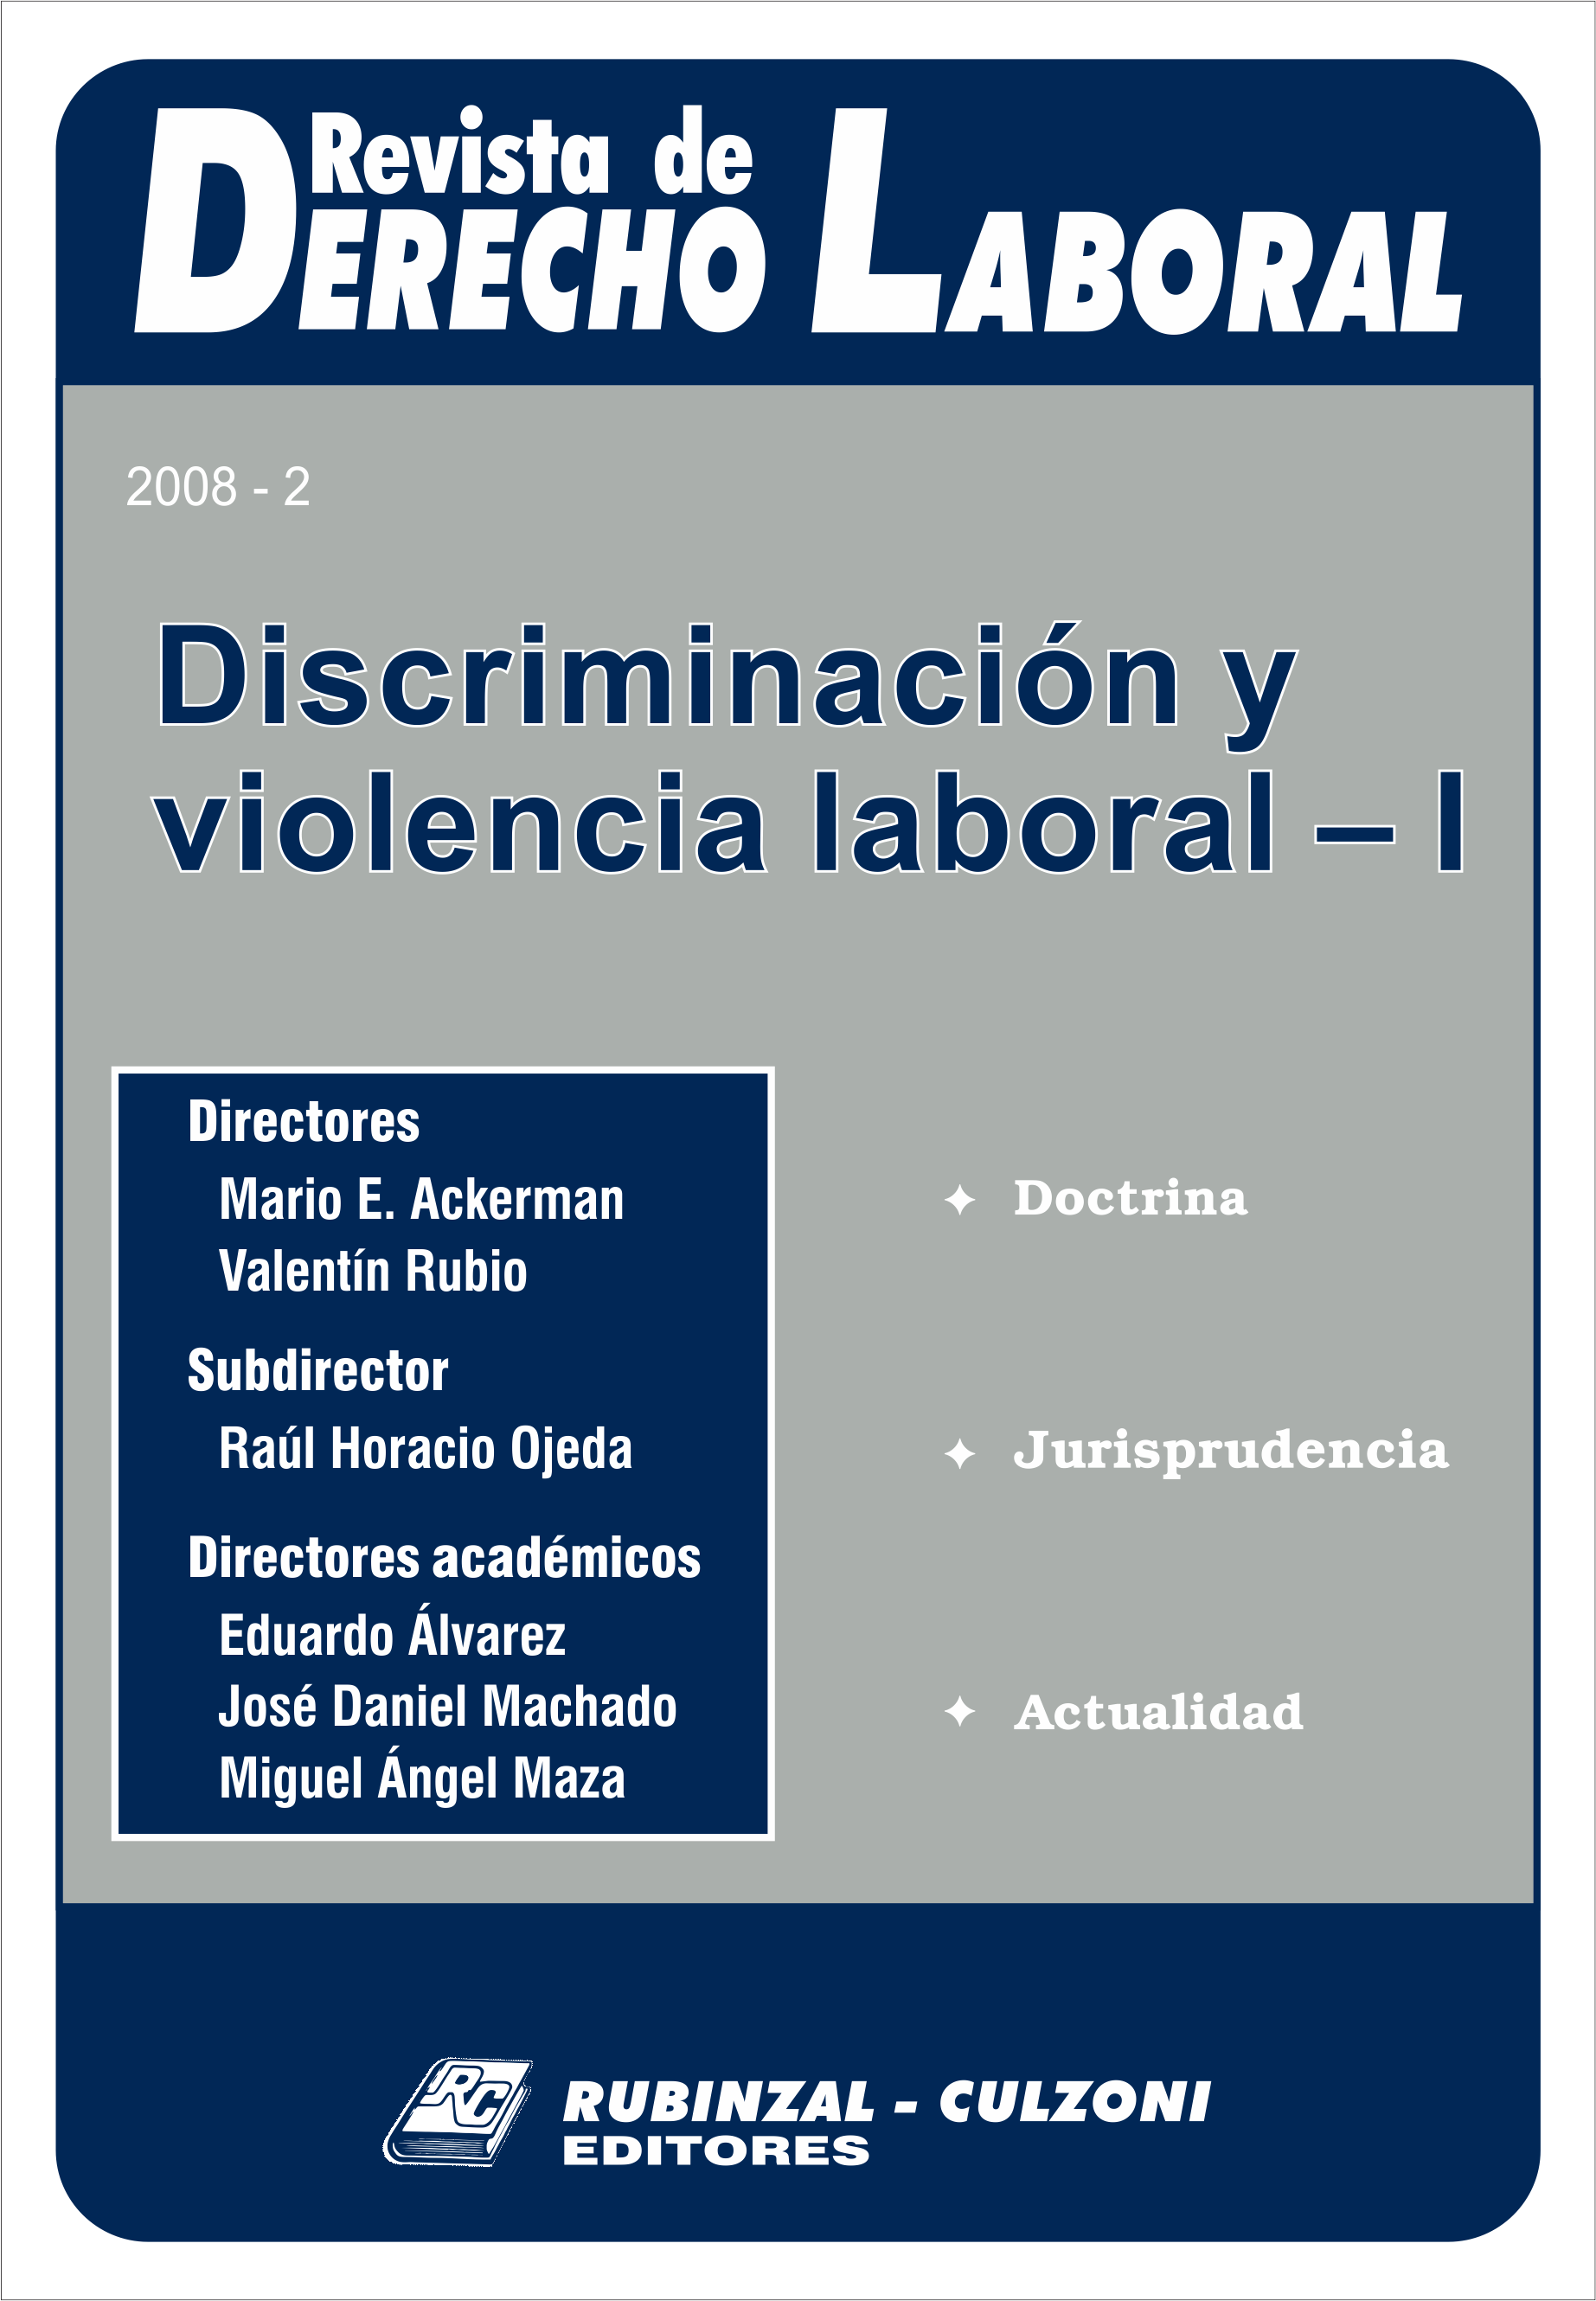  - Discriminación y violencia laboral - I. [2008-2]